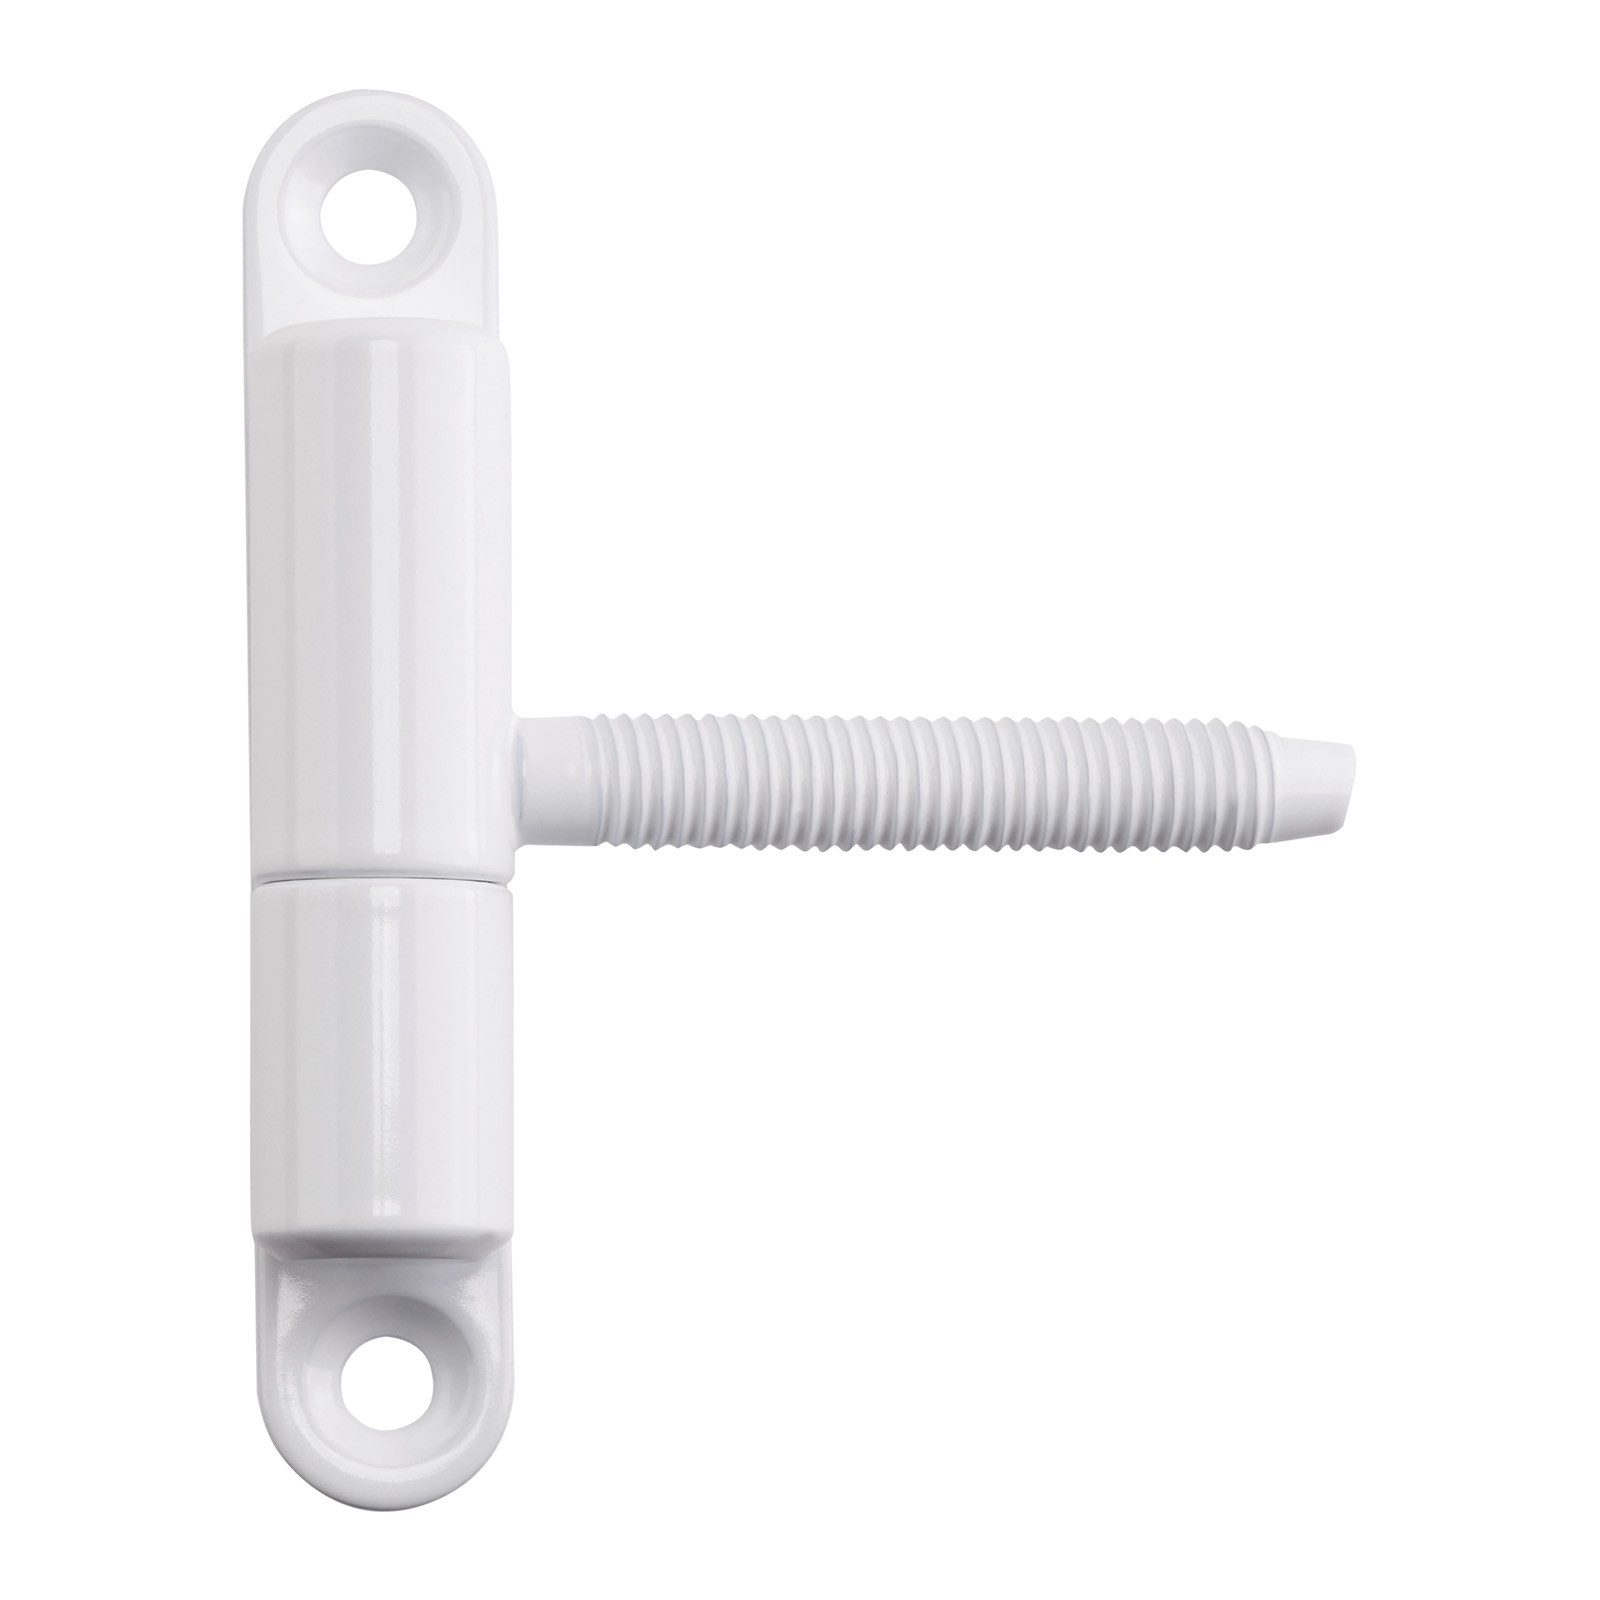 SO-TECH® Türbeschlag Renovierband Türband Aufschraubband 15 x 83 mm Scharnier Stahl (1 St), für Innentüren zum Auf- & Einschrauben, weiß, 1 Stück